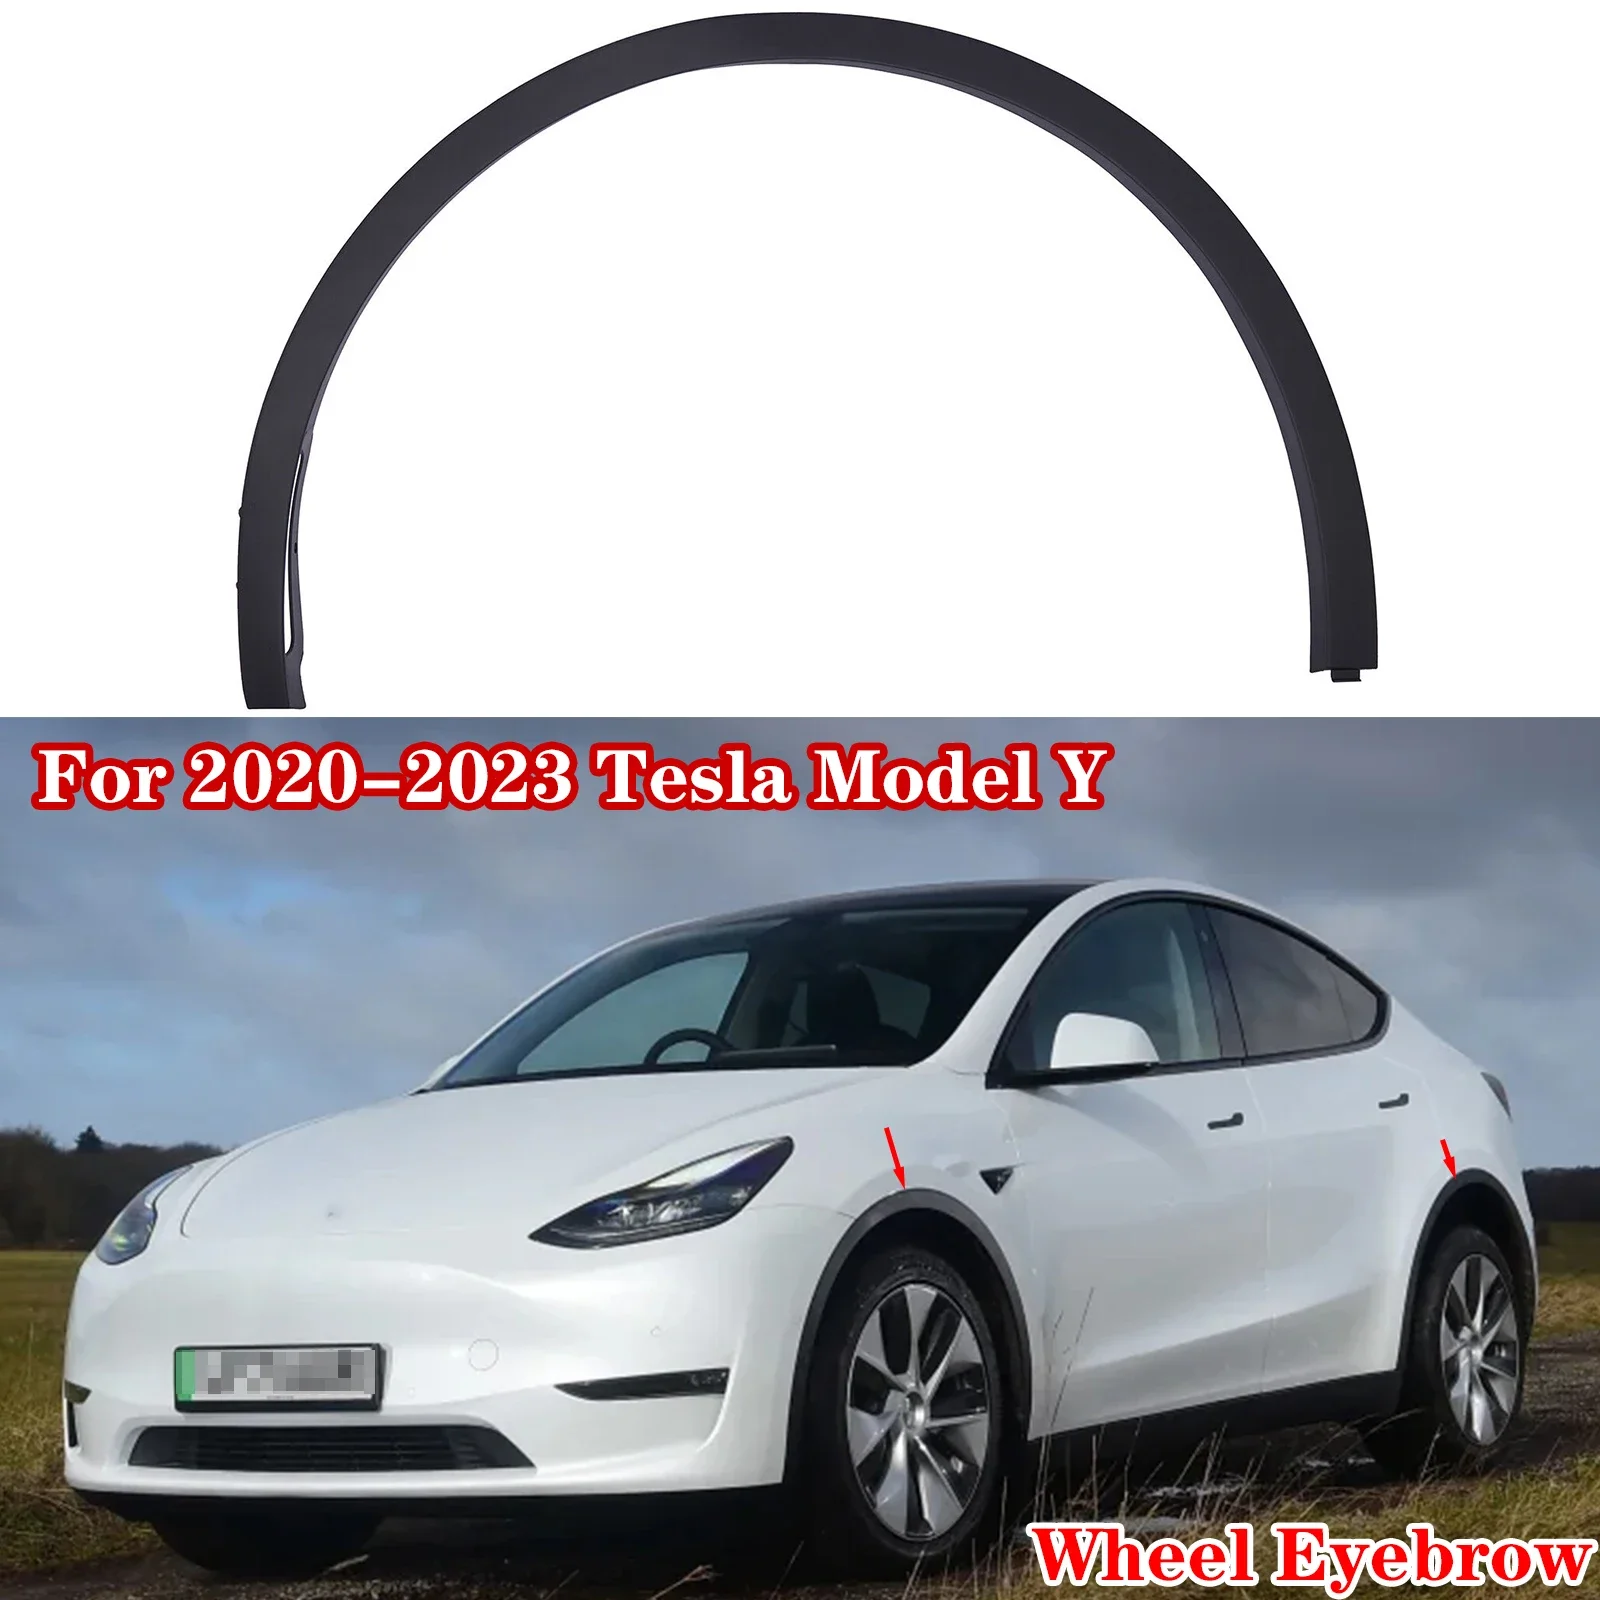 

Front Rear Wheel Eyebrow Molding Fender Flare For 2020-2023 Tesla Model Y 1494185-00-B 1494161-00-B 1494186-00-B 1494162-00-B